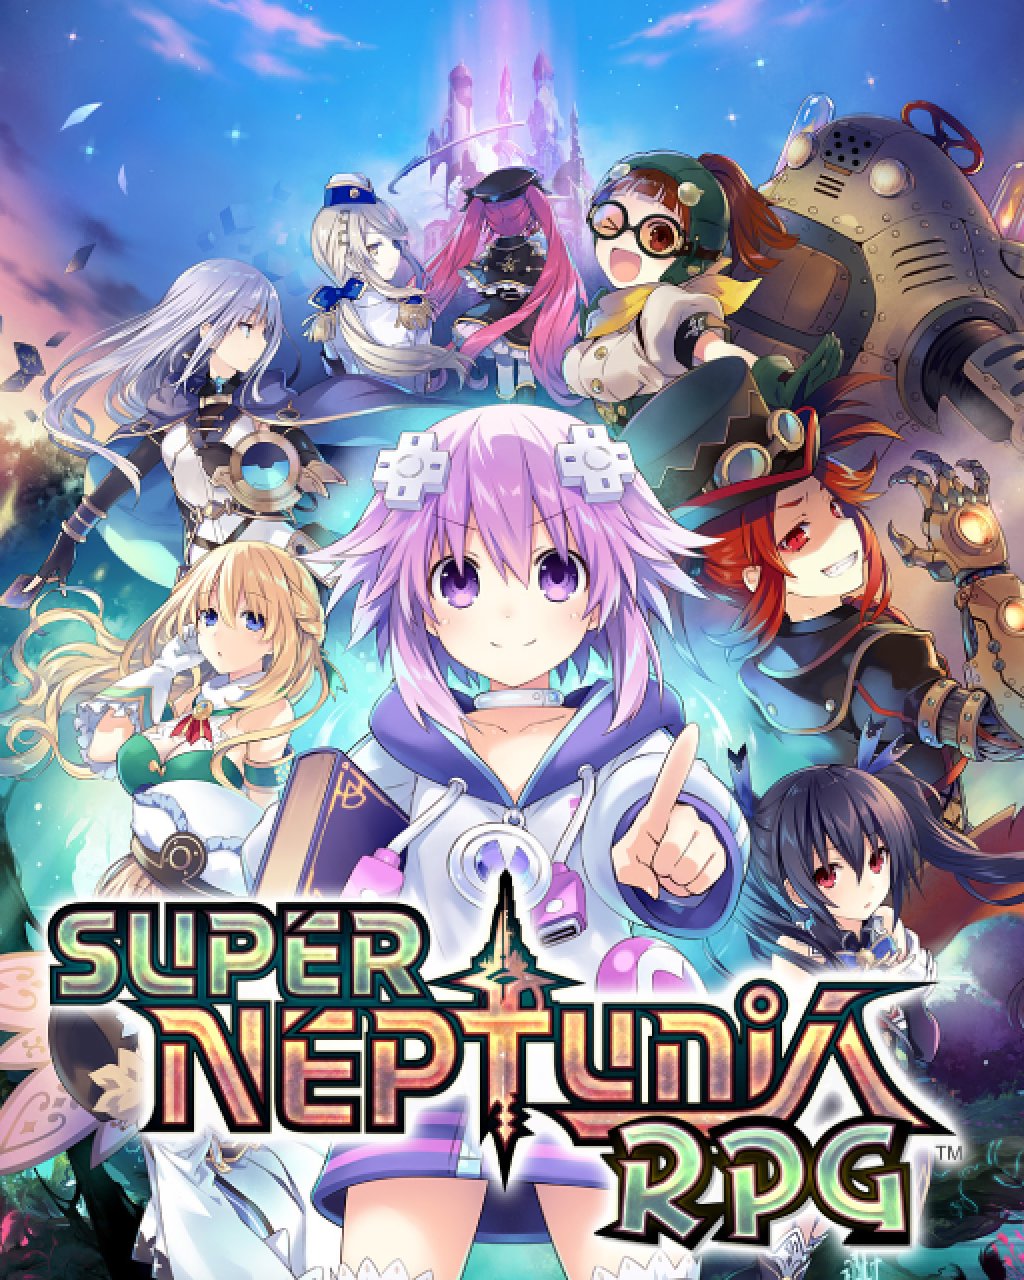 Super Neptunia RPG